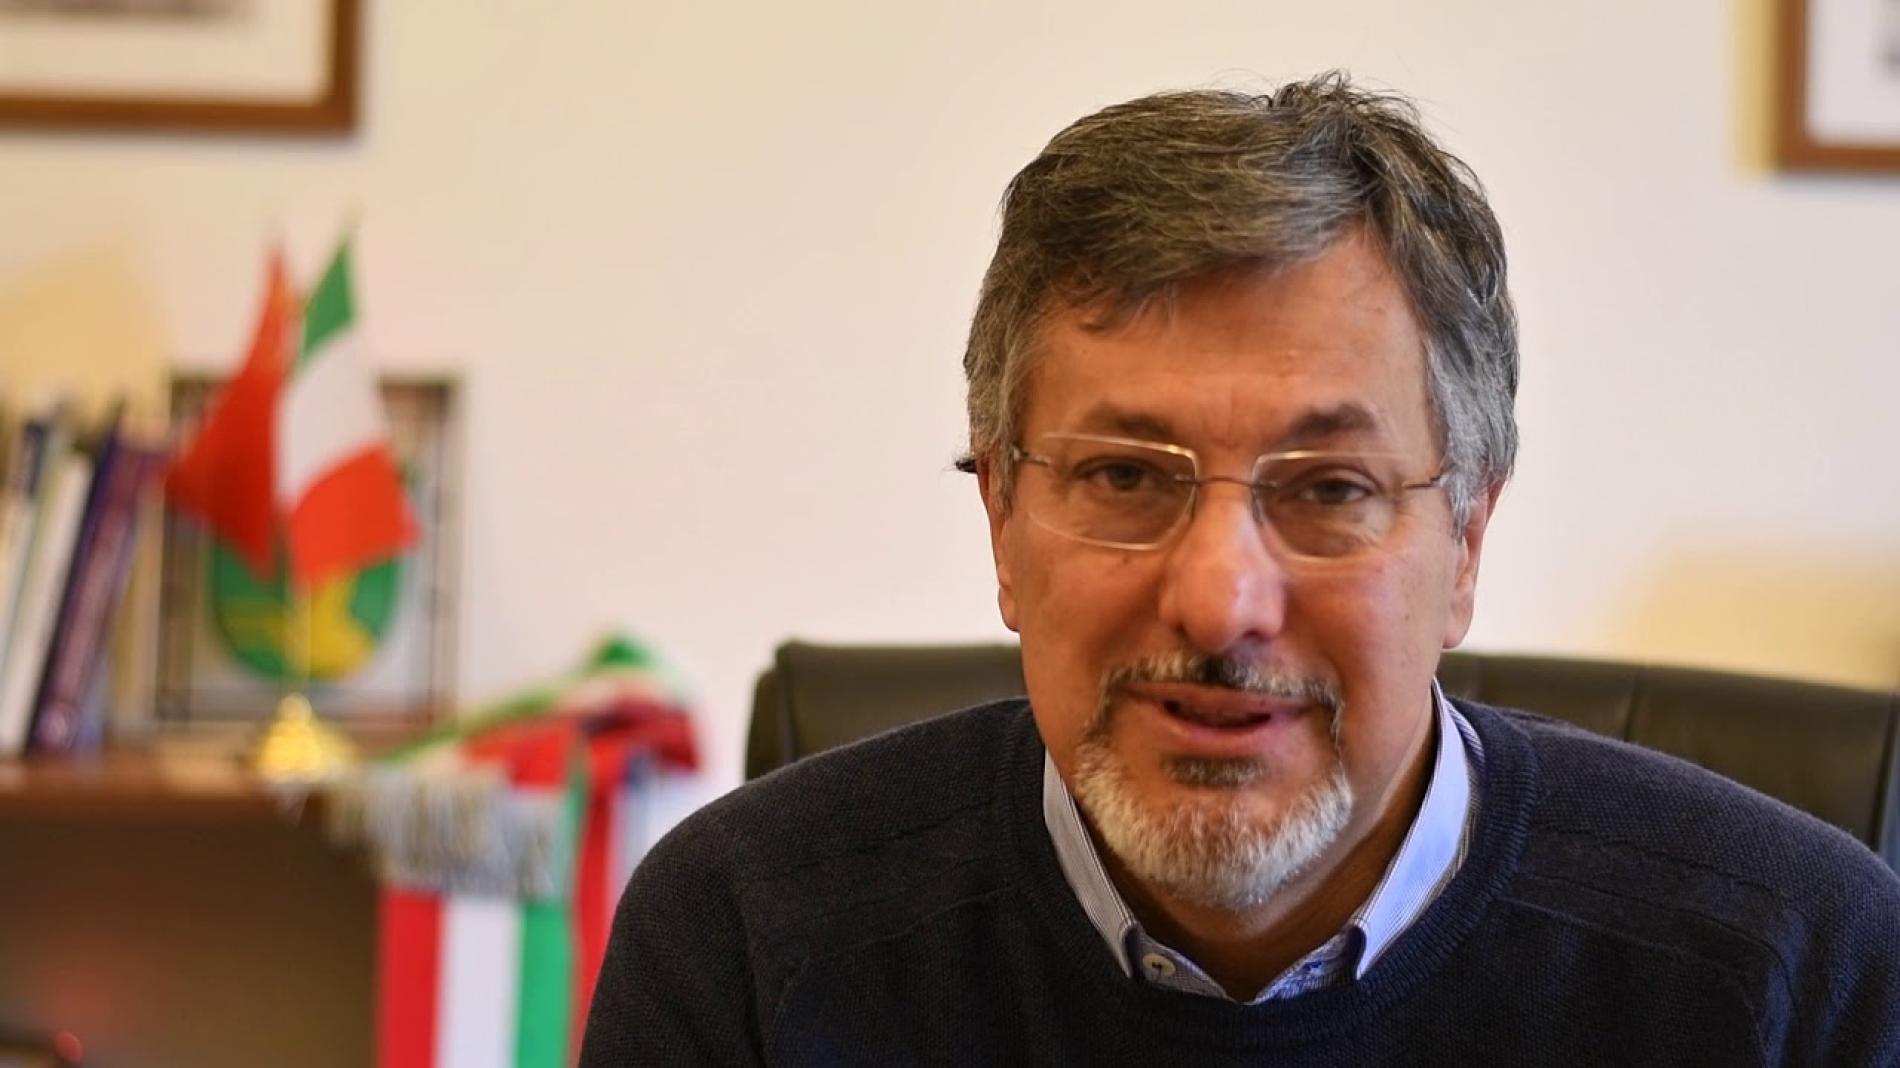 Peste suina: Giorgio Sapino commissario straordinario per l’emergenza